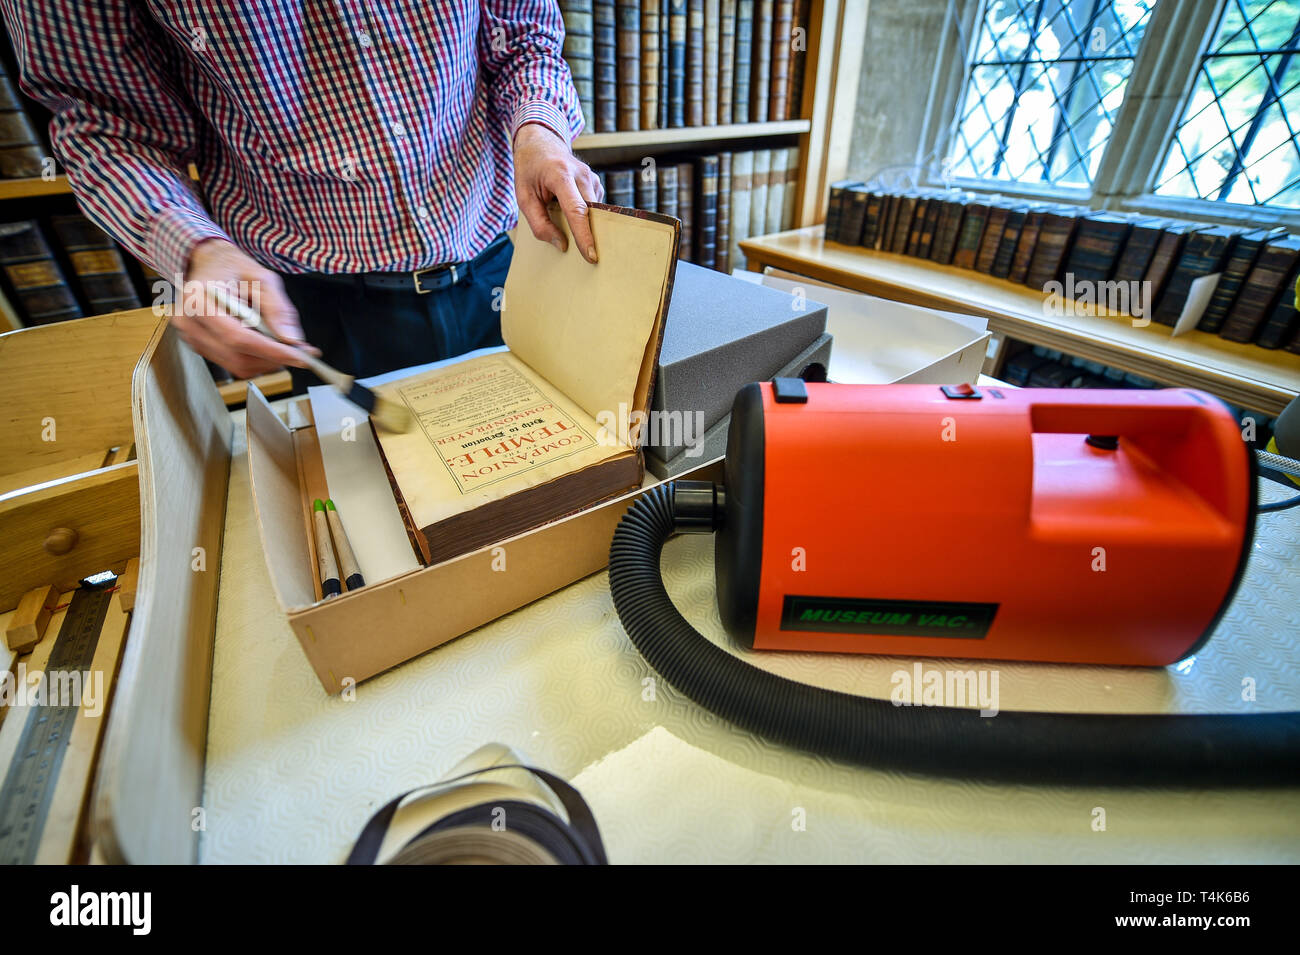 Die Kathedrale von Salisbury Bibliothek ehrenamtliche Colin Malcolm vorsichtig Bürsten die inneren Seiten eines Buches, das im 15. Jahrhundert die Bibliothek der Kathedrale, wo ein Projekt zum Katalog, sauber und finden Sie mehr über die seltene Buch Sammlung ist im Gange. Stockfoto